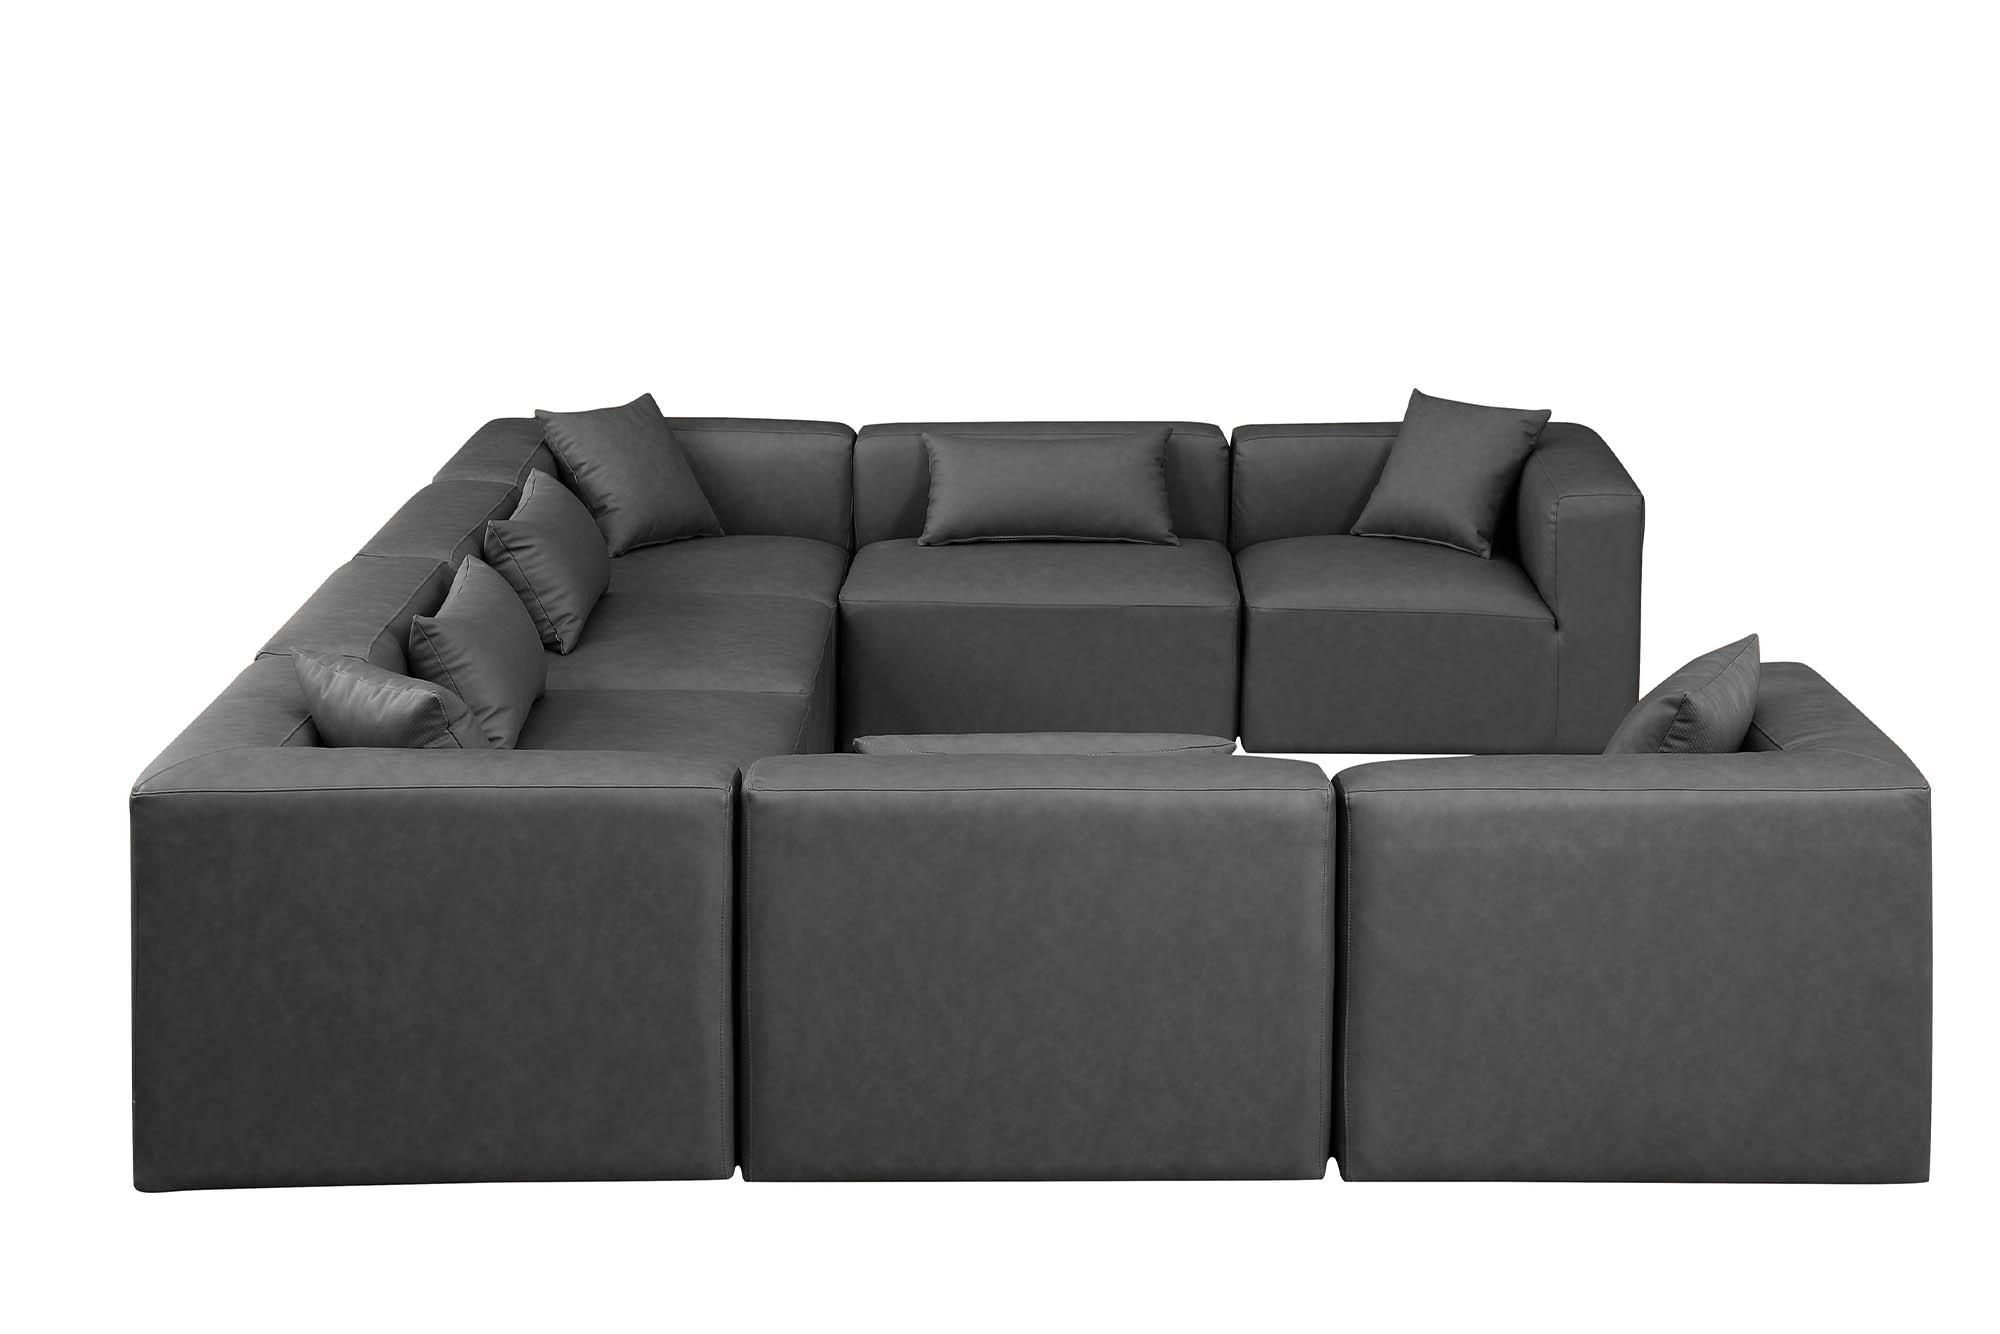 

    
668Grey-Sec8A Meridian Furniture Modular Sectional Sofa
